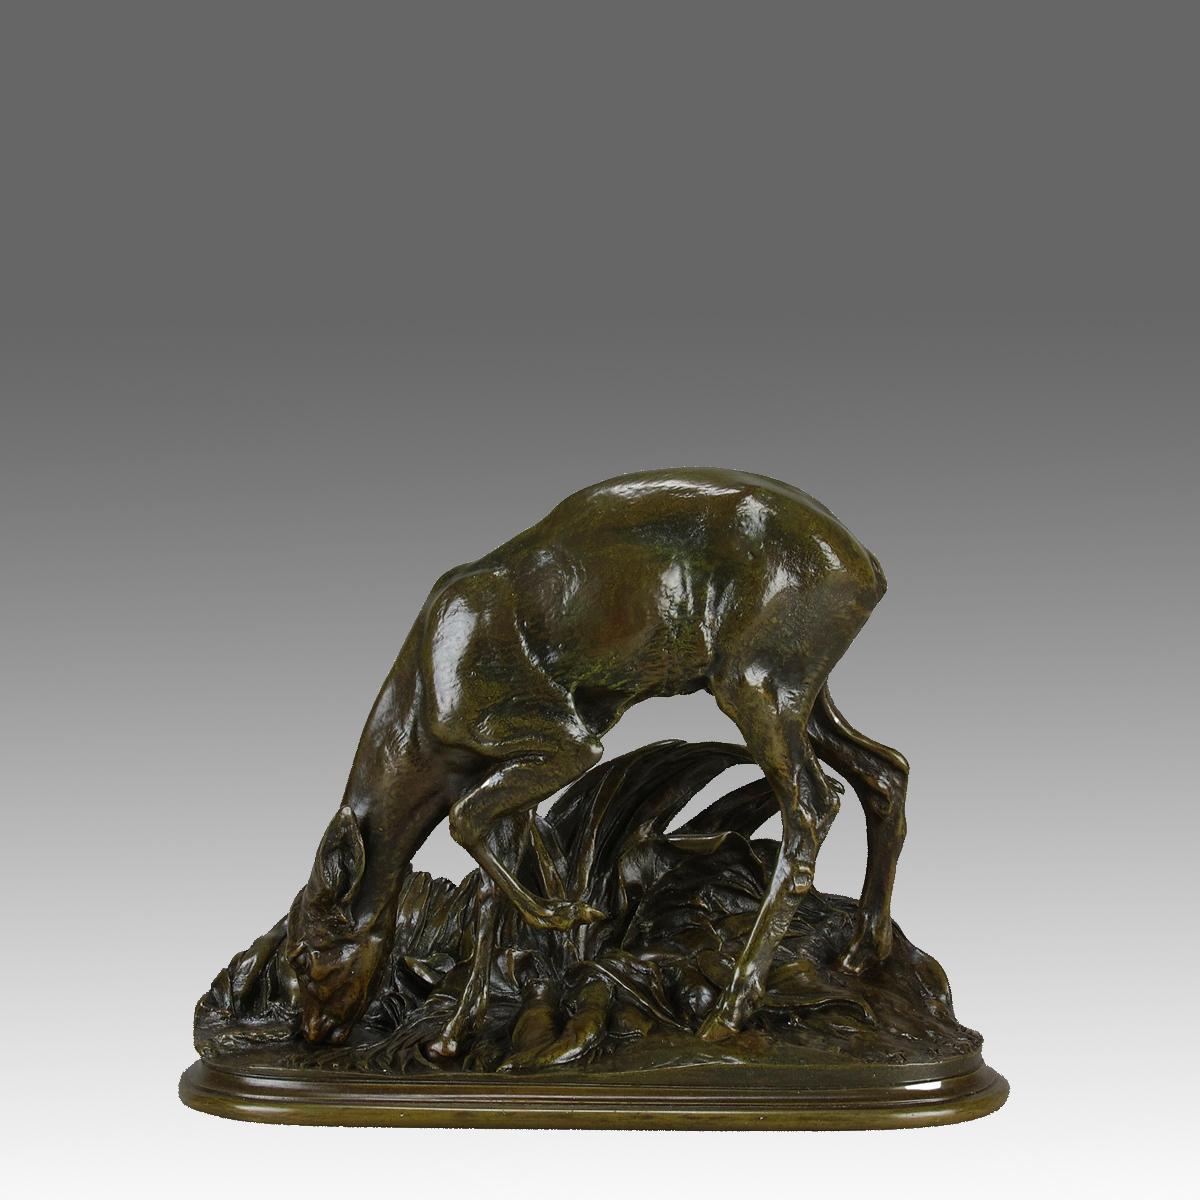 Eine sehr seltene Animalier-Bronzestudie aus der Mitte des 19. Jahrhunderts, die ein trinkendes Reh am Ufer eines Sees darstellt. Die Bronze hat eine fabelhafte, reiche braune Patina und sehr feine, handziselierte Oberflächendetails, die auf einem